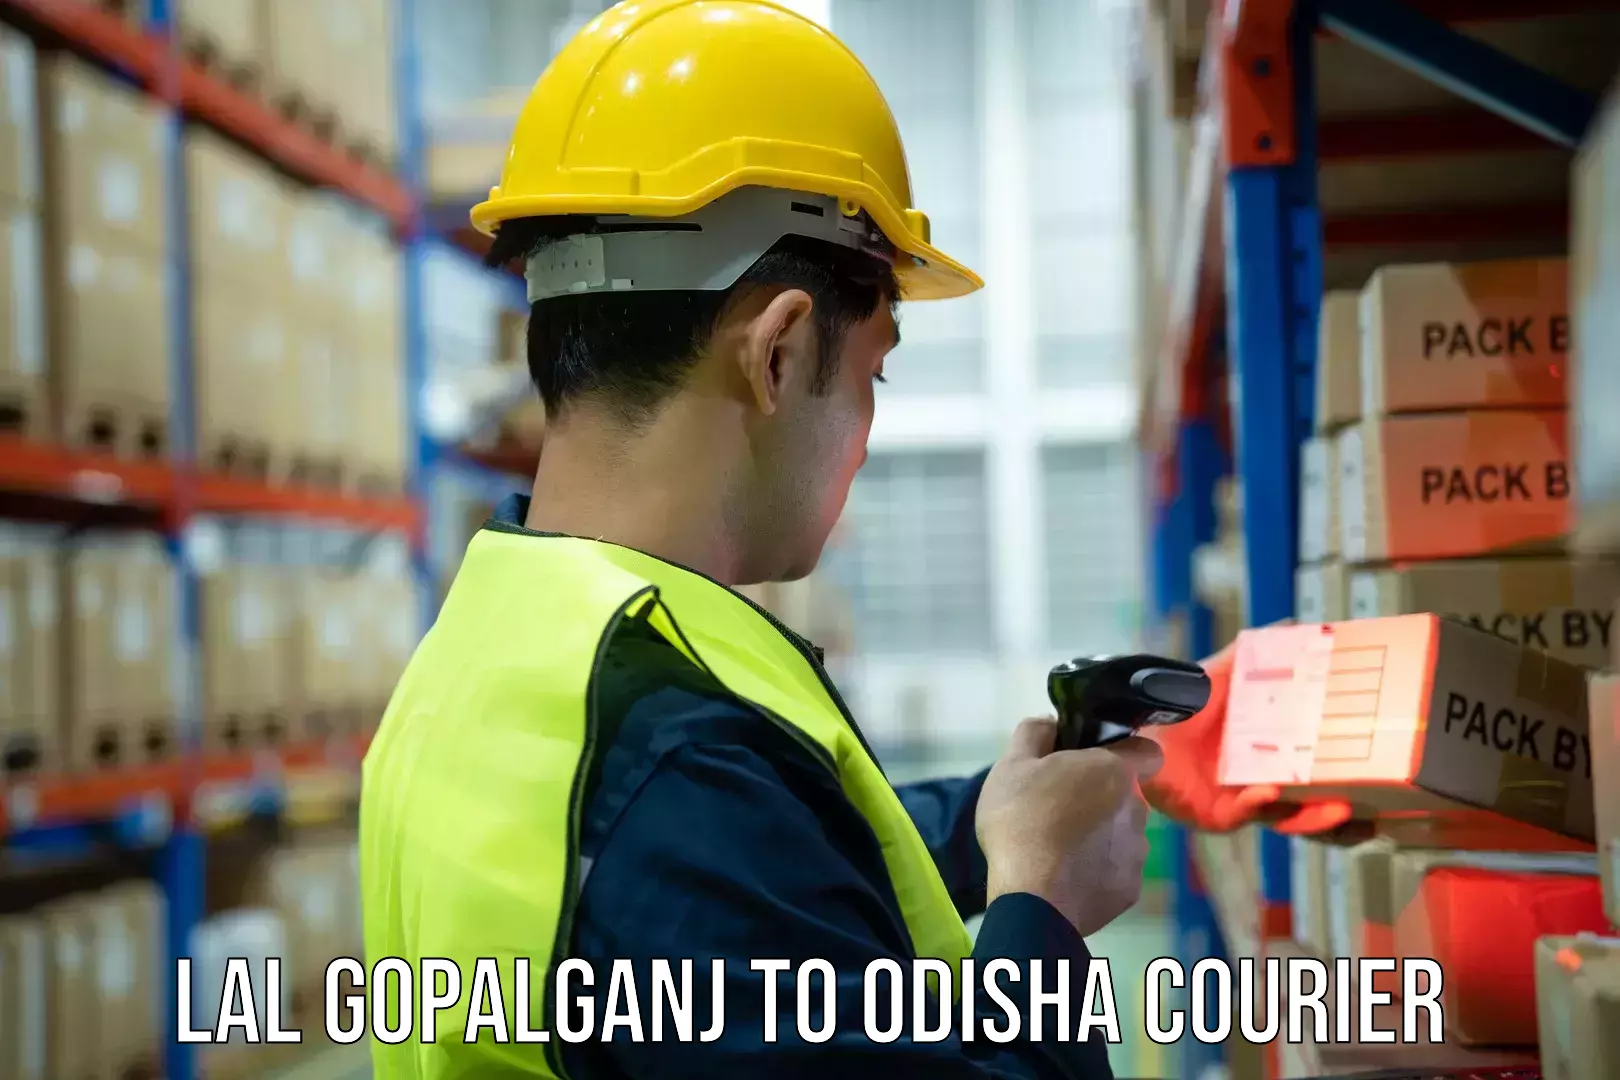 Global courier networks Lal Gopalganj to Sambalpur